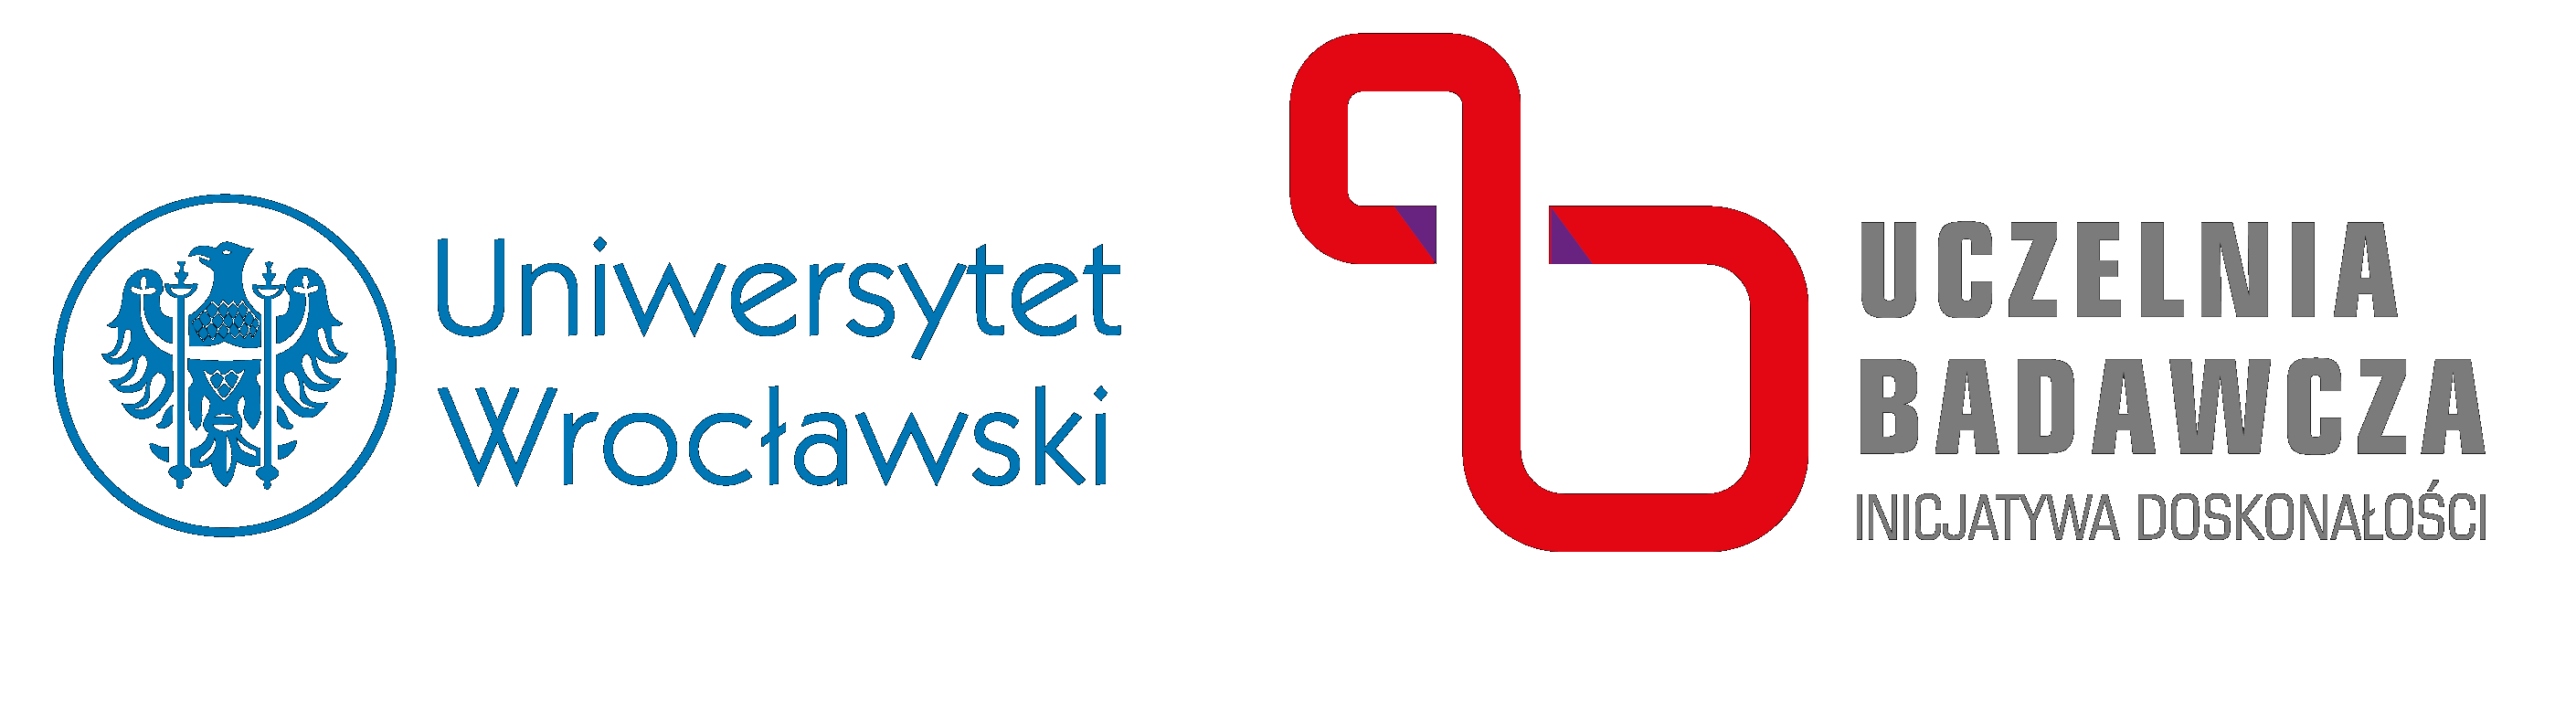 BadawczaUWrPL Logo EN Inicjatywa Doskonalosci CMYK poziom